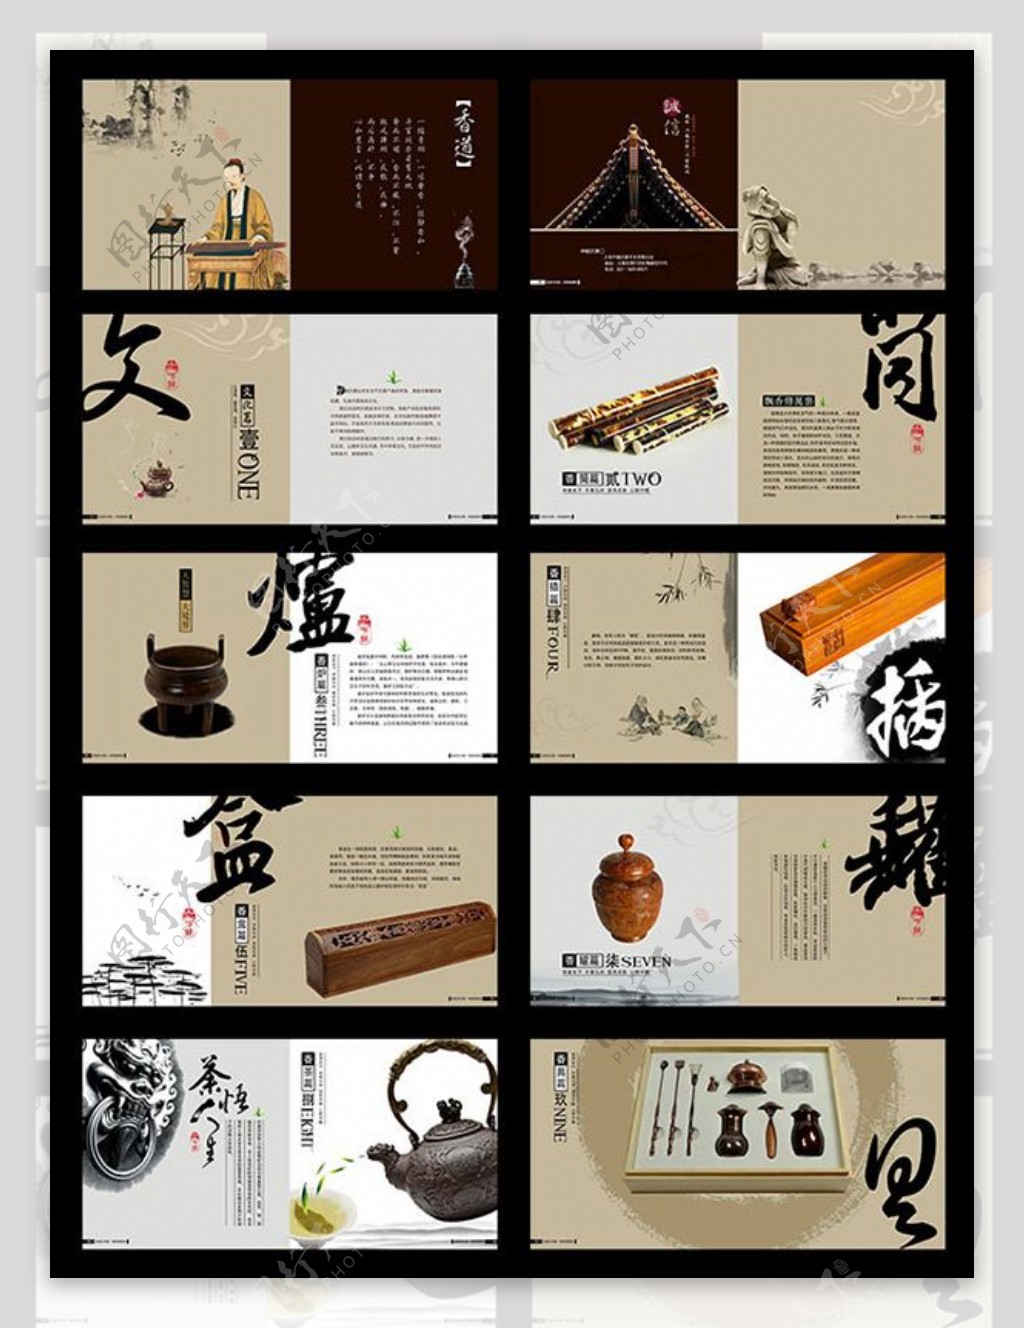 中国风香盒画册psd素材下载